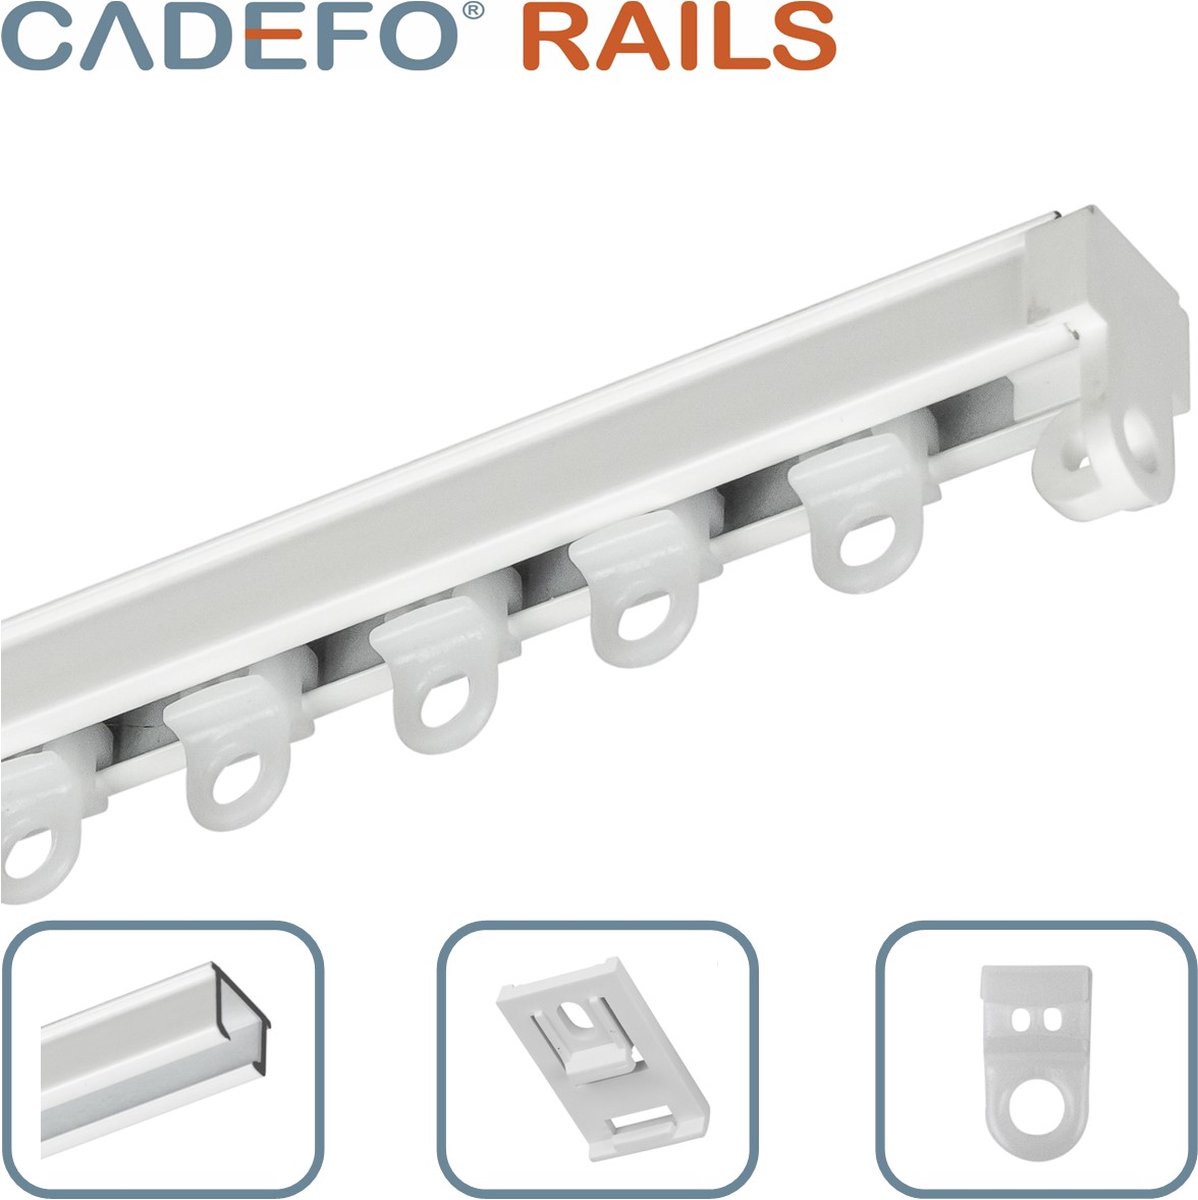 CADEFO RAILS (101 - 150 cm) Gordijnrails - Compleet op maat! - UIT 1 STUK - Leverbaar tot 6 meter - Plafondbevestiging - Lengte 110 cm